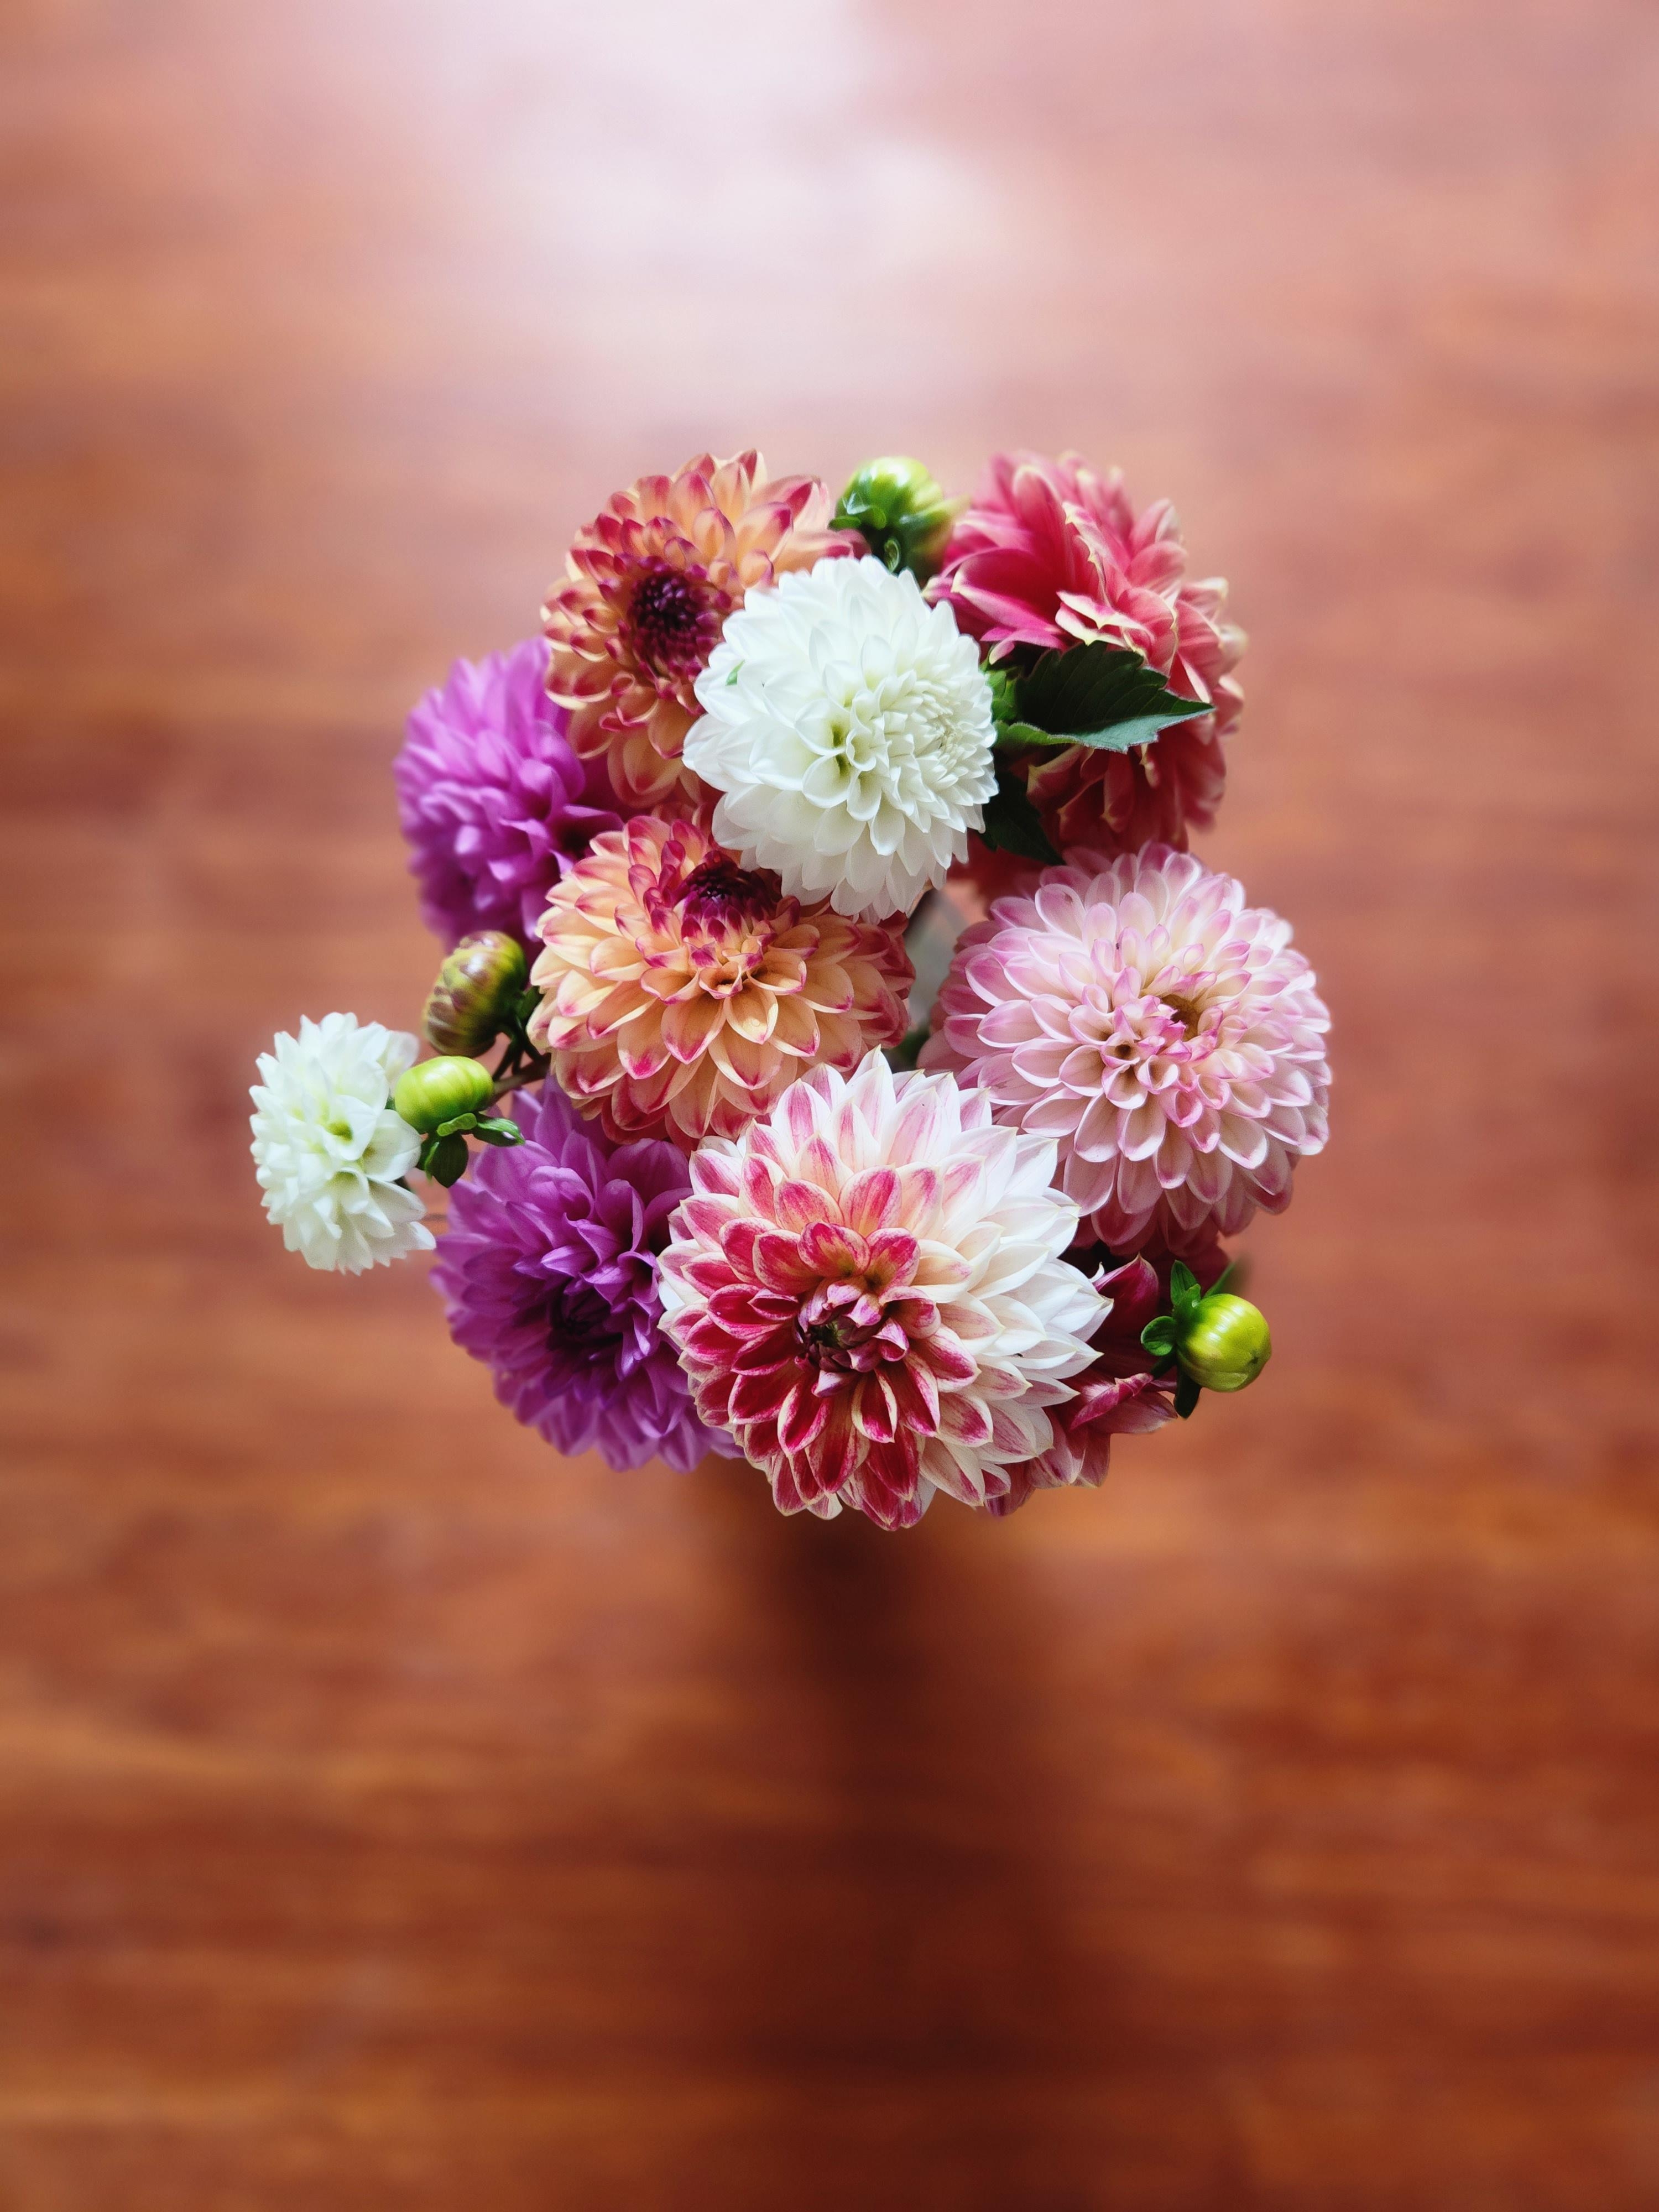 Ich liebe frische Blumen auf dem Tisch ♡

#dahlien #dahlias #blumen #flowers #herbstdeko #blumendeko #aufmeinemtisch 